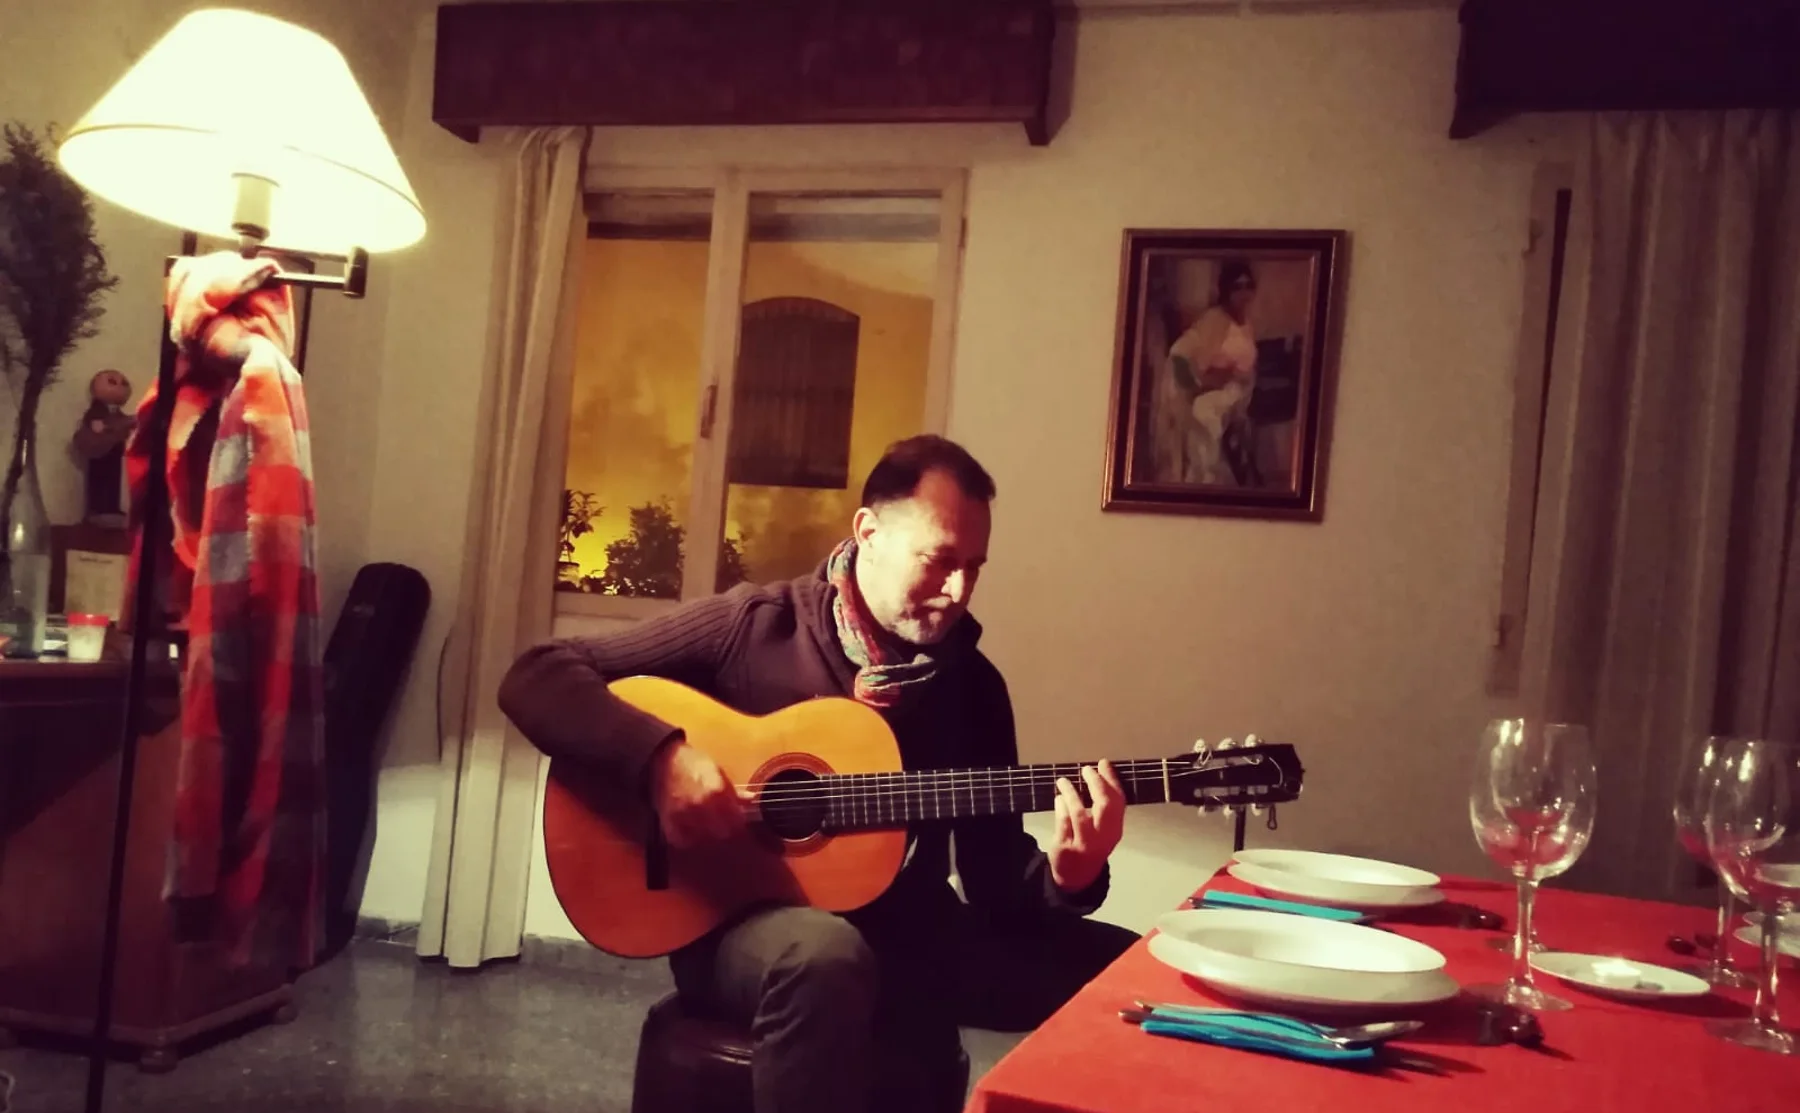 Cena con guitarra flamenca. - 1141428